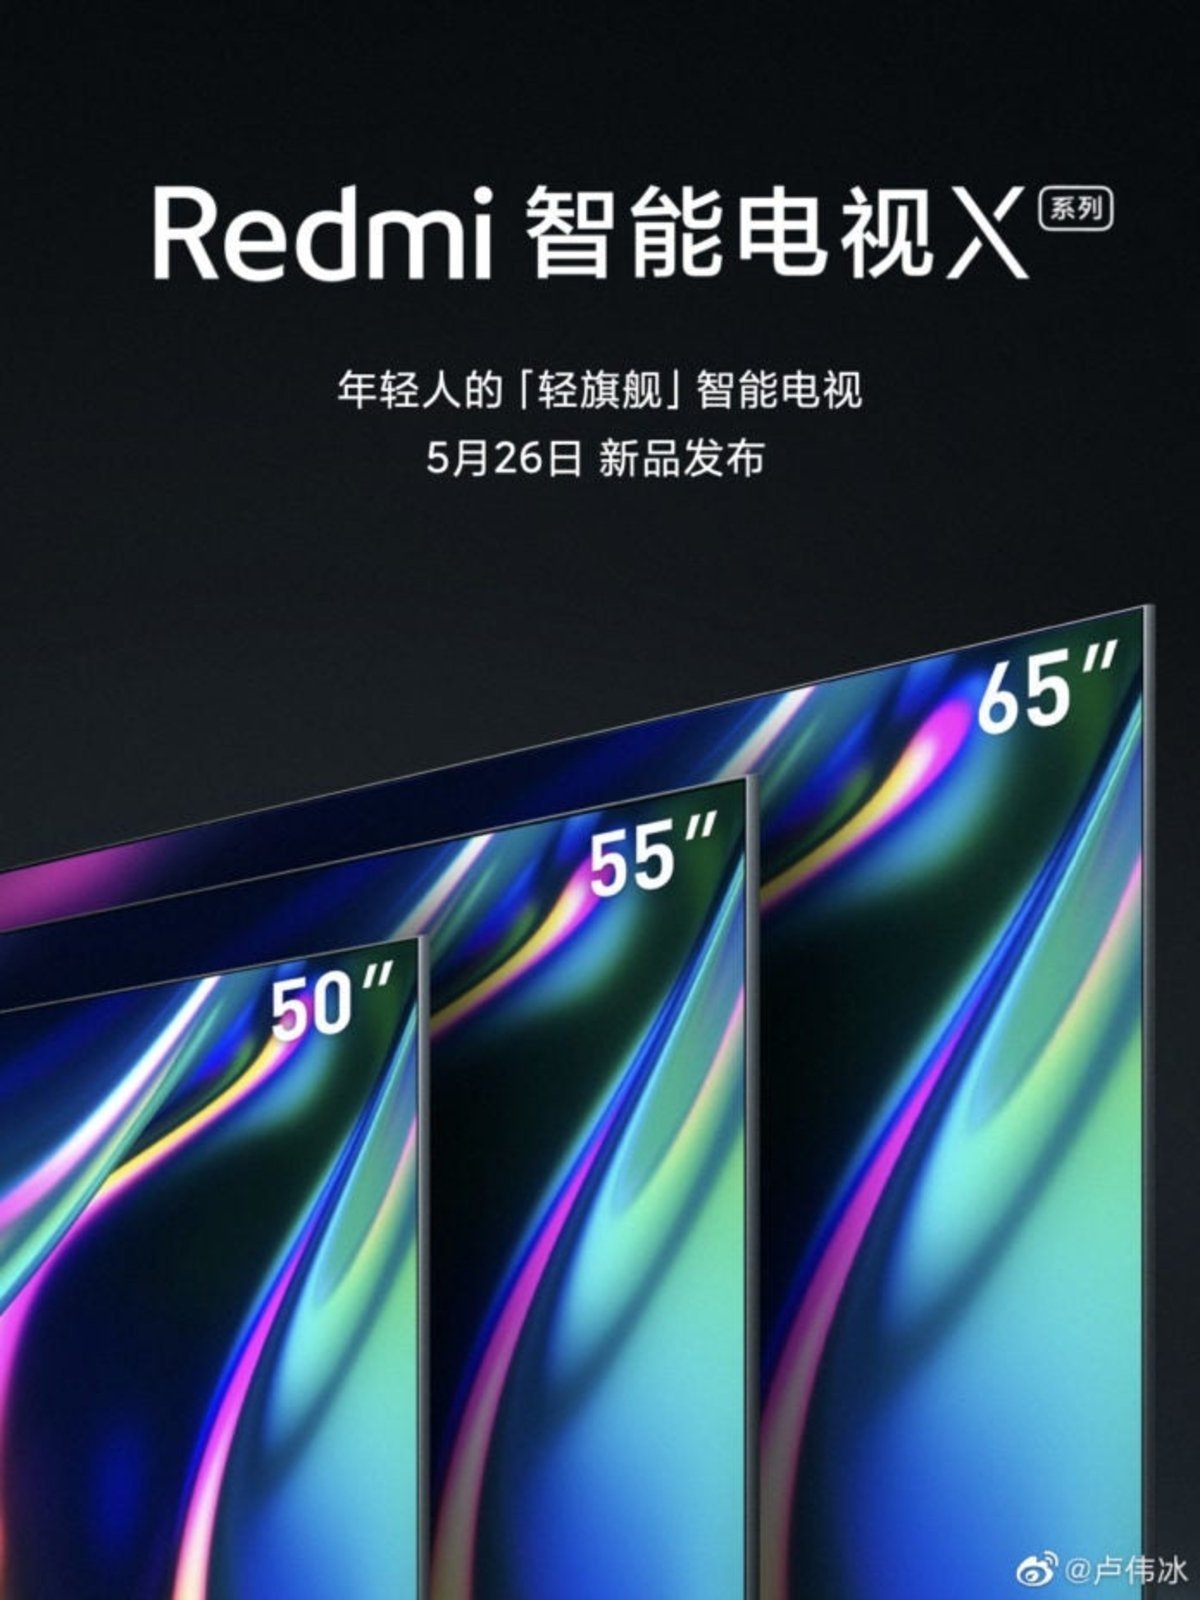 Redmi TV 2020: al detalle la actualización de las teles baratas de Xiaomi